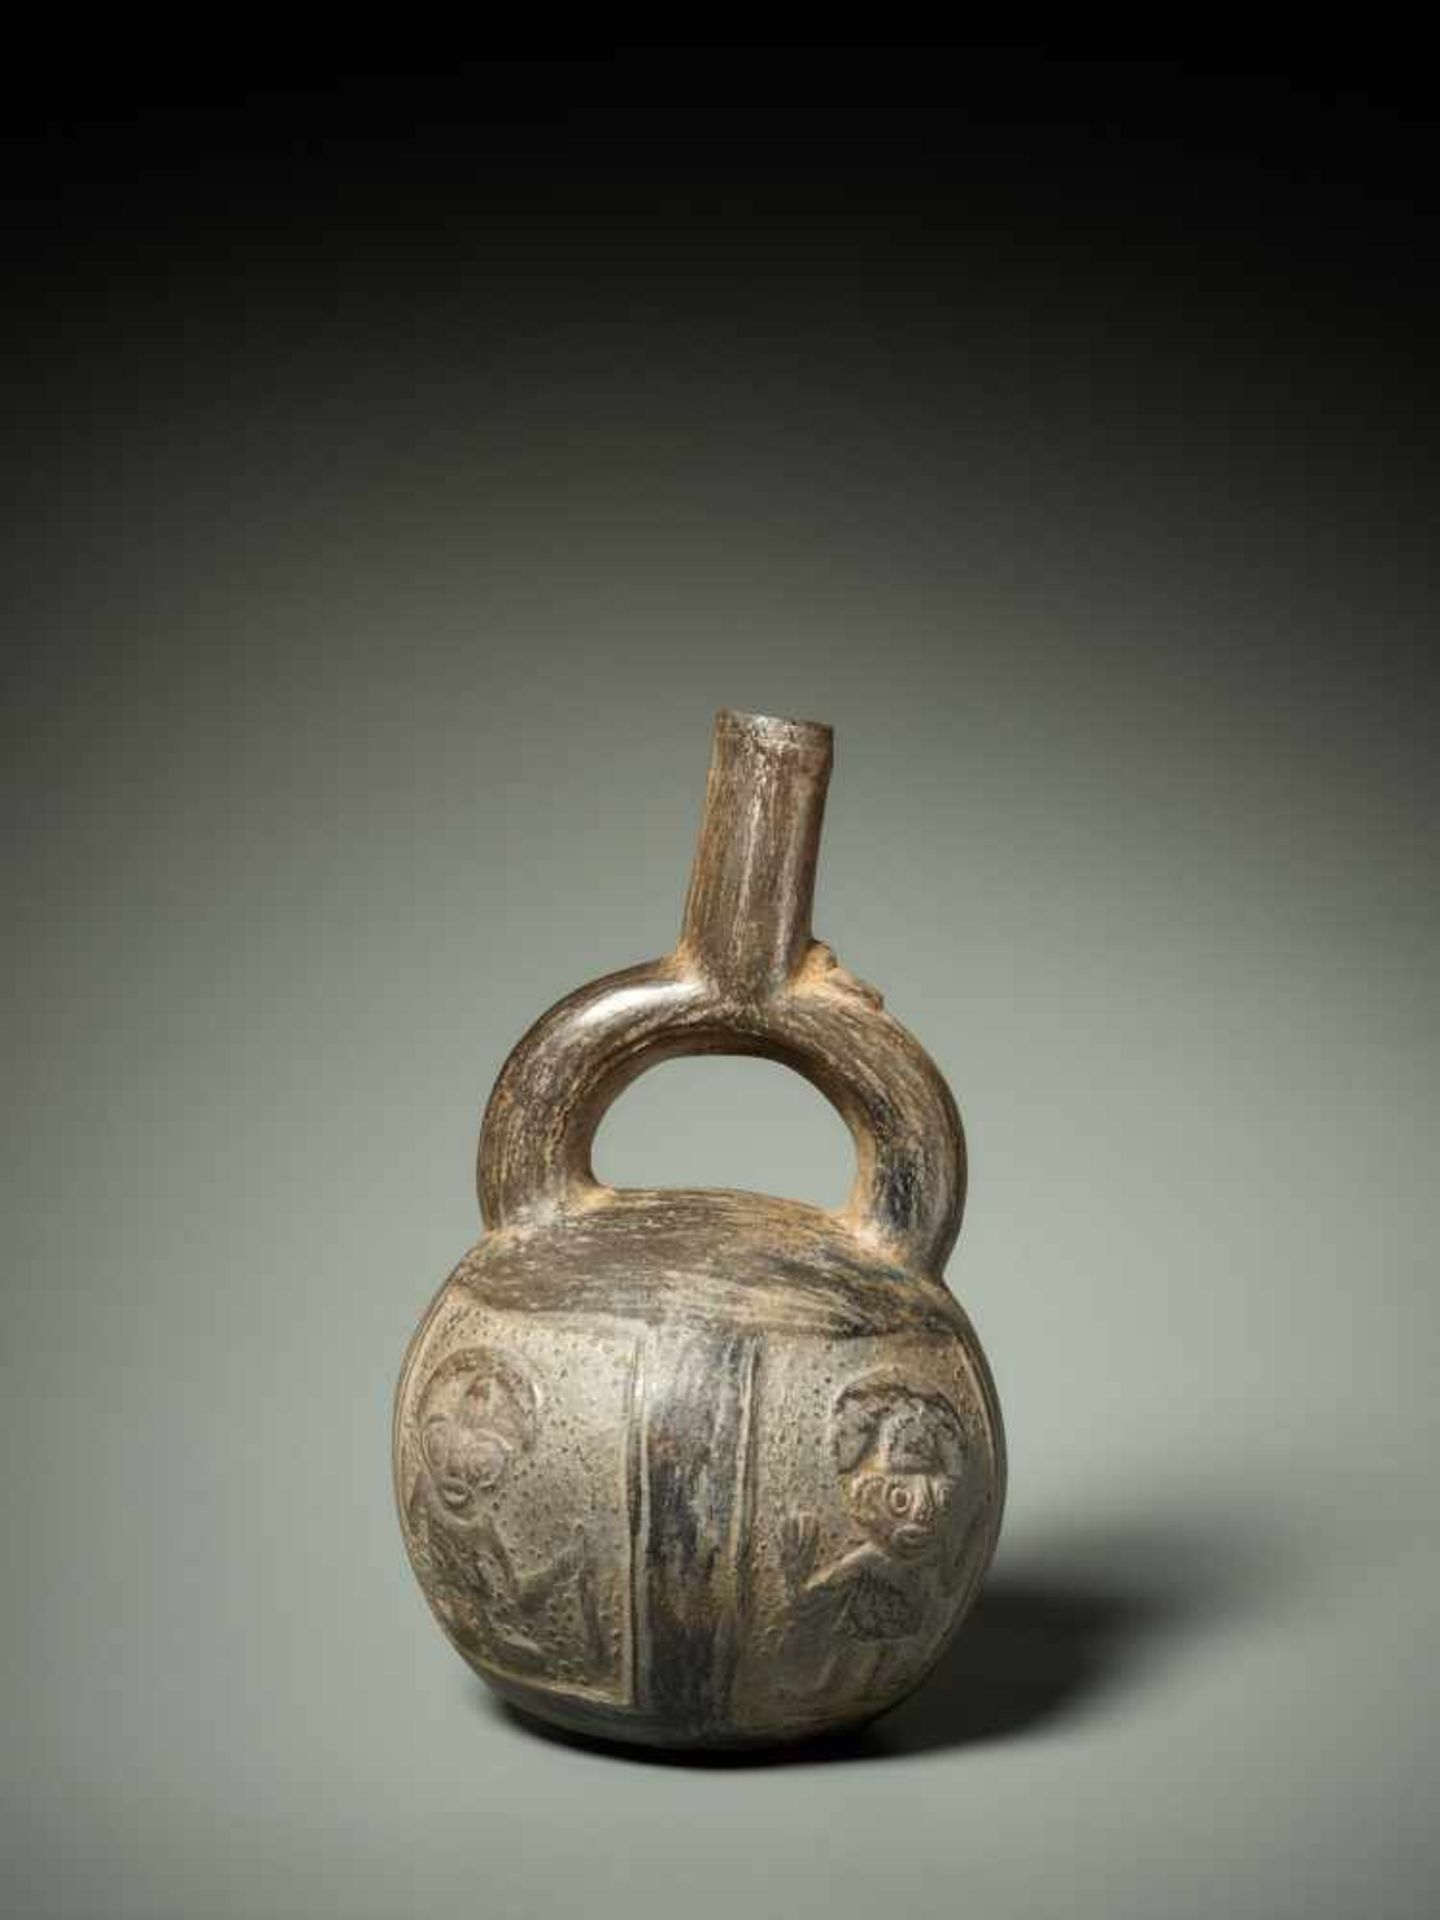 STIRRUP VESSEL WITH RELIEF DECORATION – CHIMU CULTURE, PERU, C. 1000-1400 ADBlack fired clayChimu